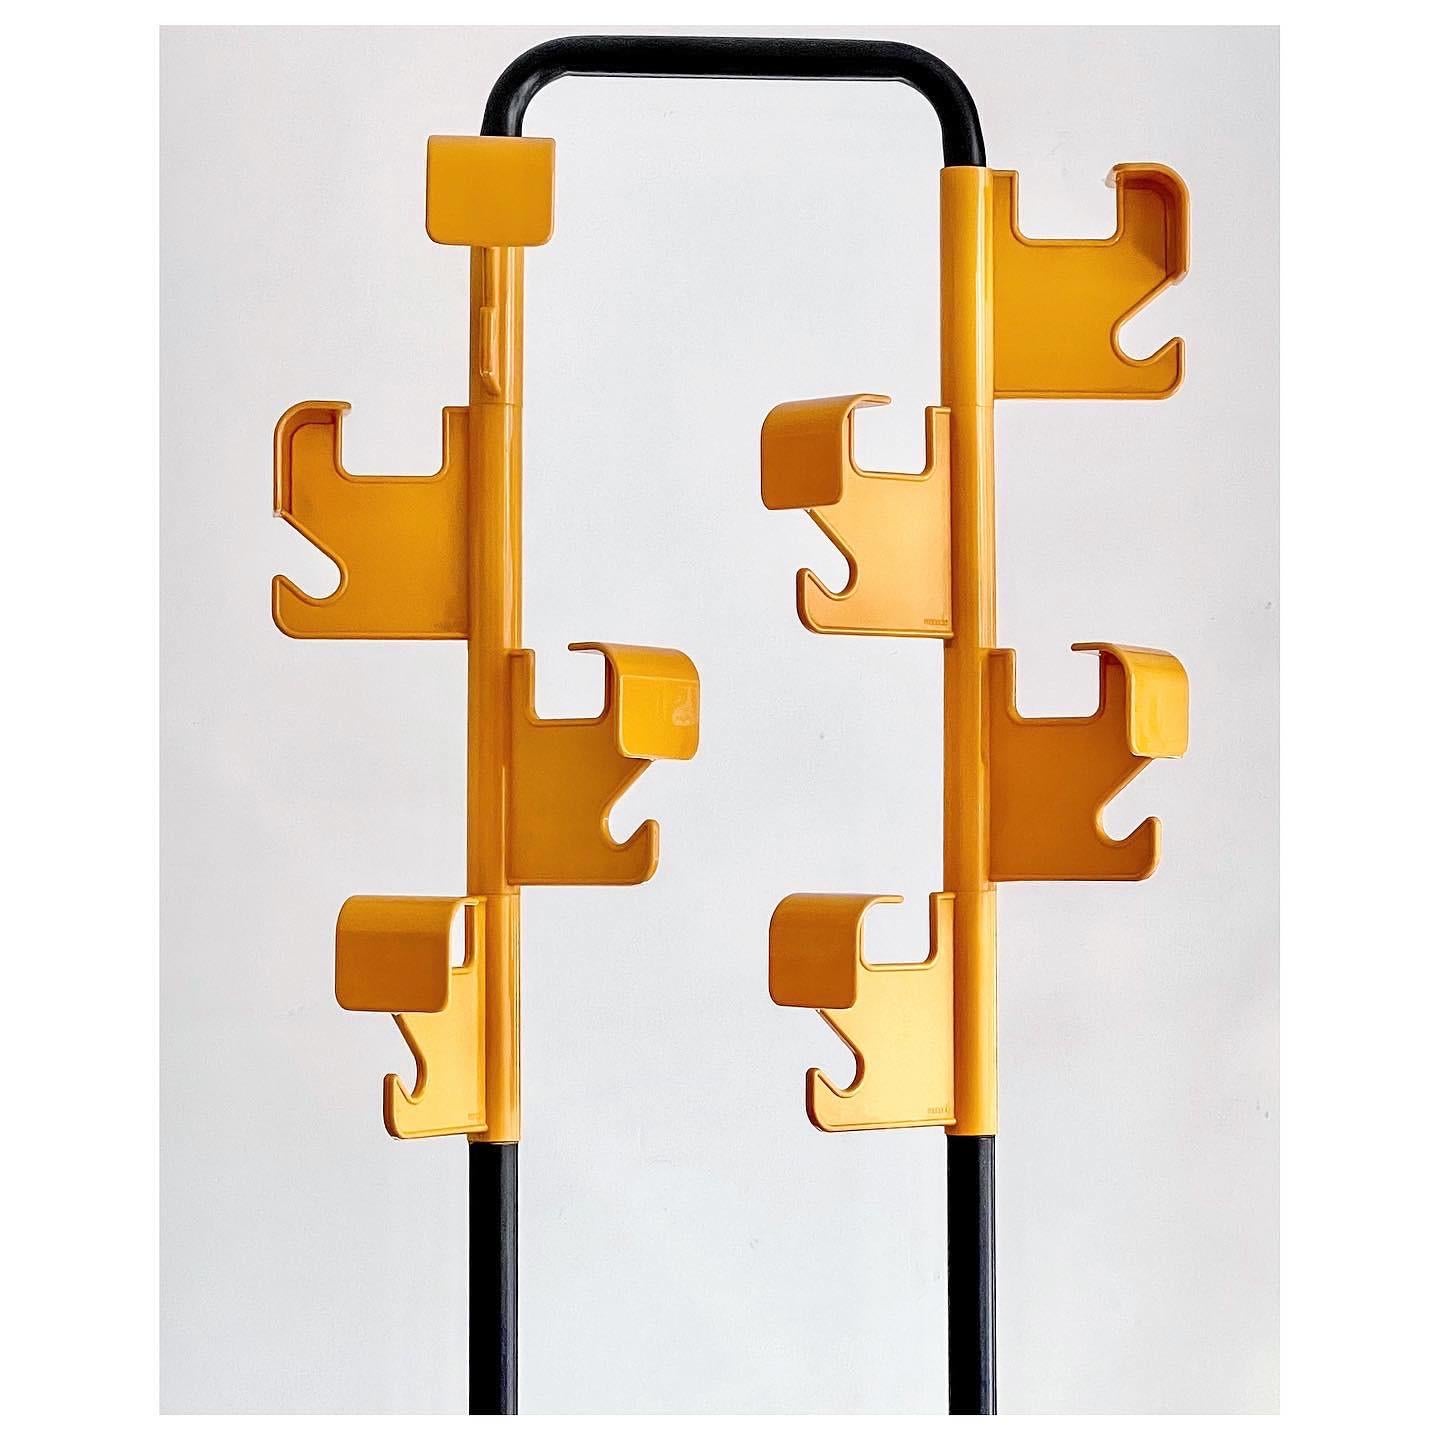 Porte-manteau coloré jaune vif du designer français Jean-Pierre Vitrac pour Manade, années 1970. 
Le porte-manteau possède une structure tubulaire en métal peint en noir, fixée à une lourde base carrée, pour recueillir l'eau de votre parapluie. Deux